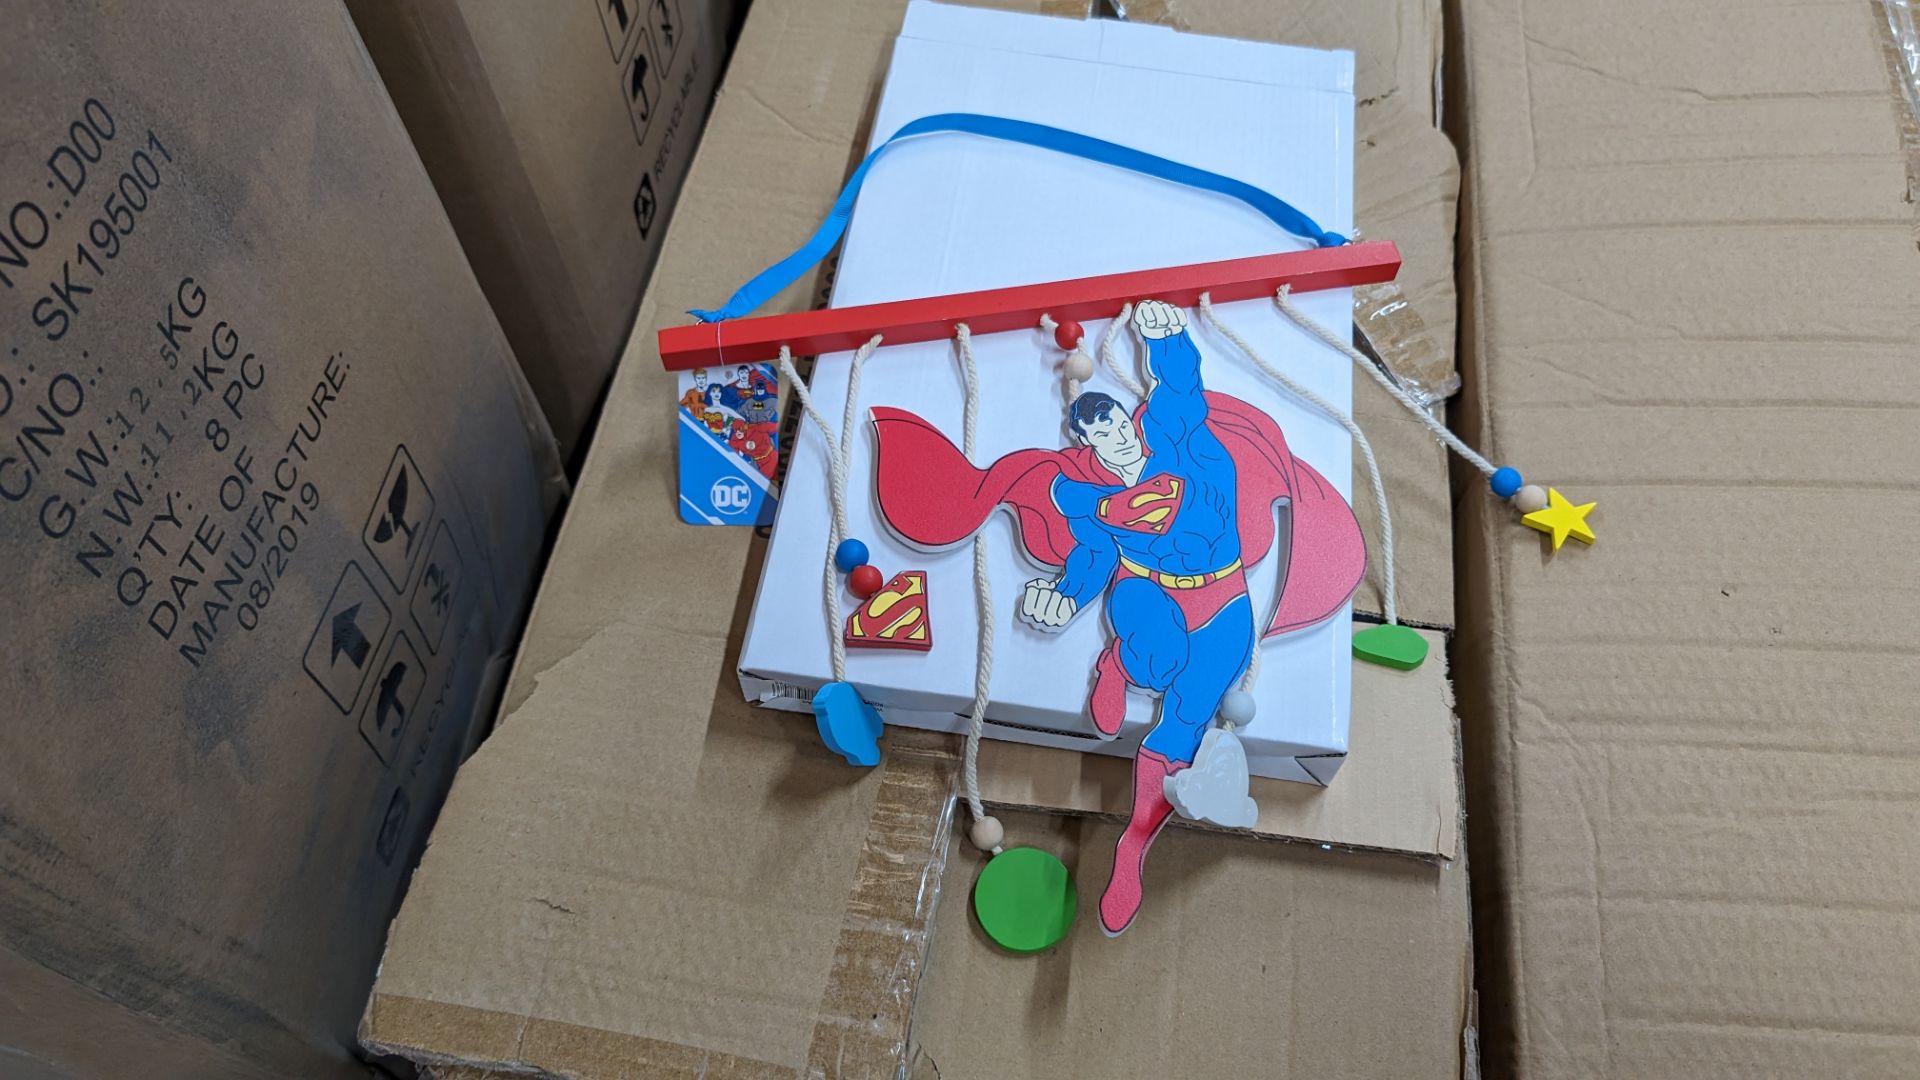 72 off DC Comics Superman hanging wall art items - 2 cartons - Image 4 of 8